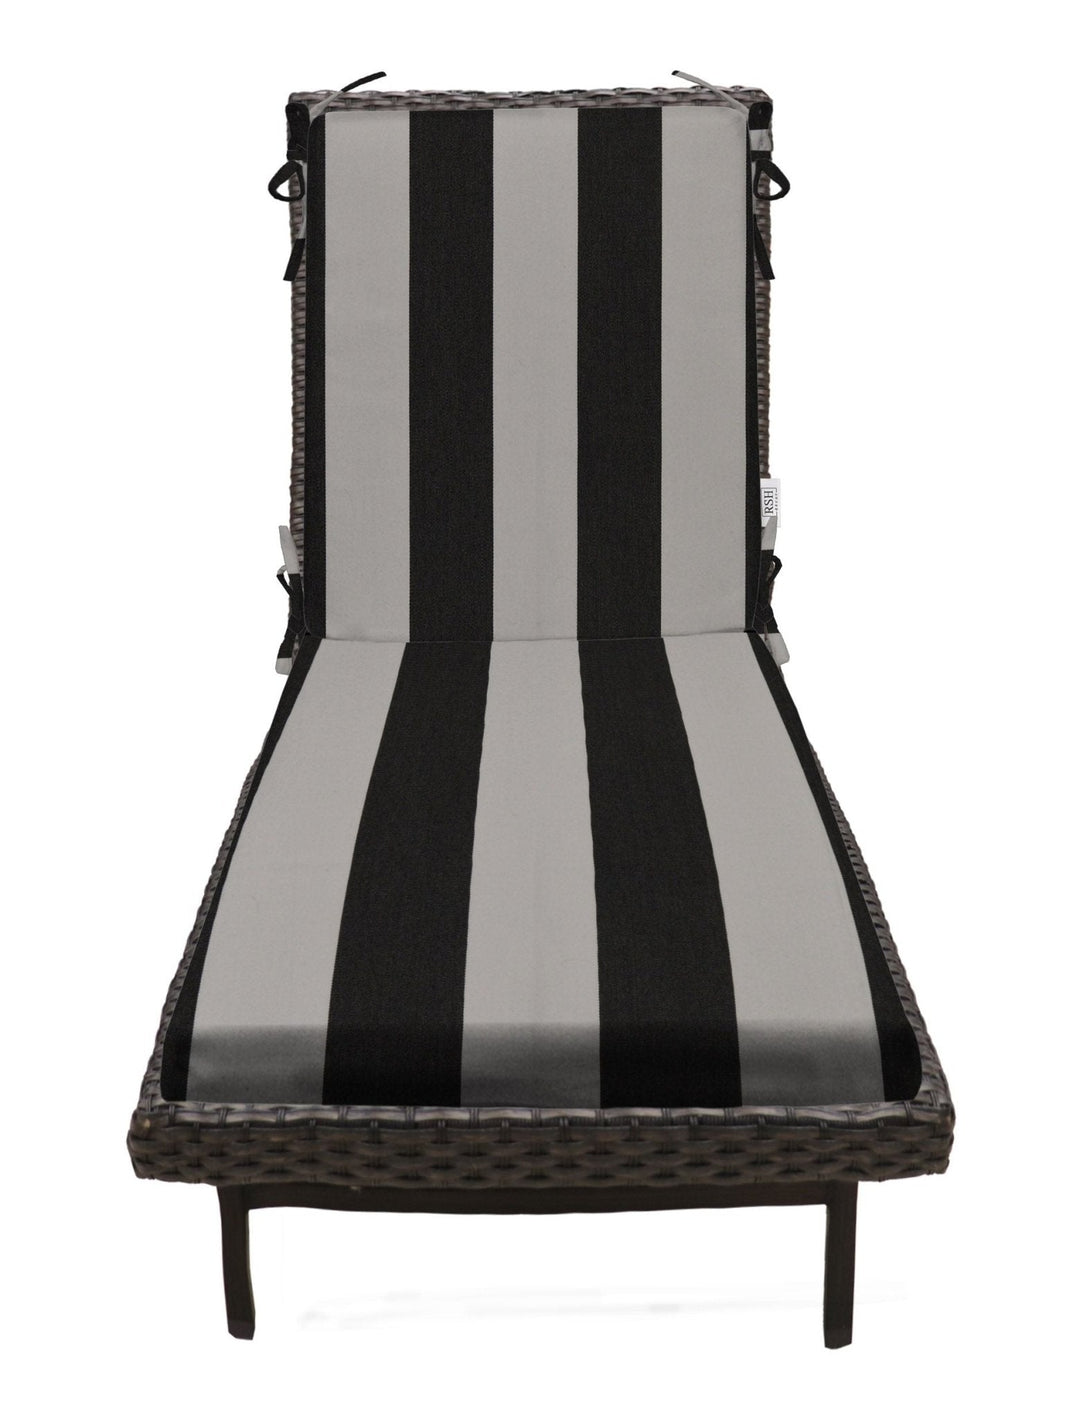 Chaise Lounge Chair Cushion, Foam, 72" H x 22" W", Sunbrella Patterns - RSH Decor